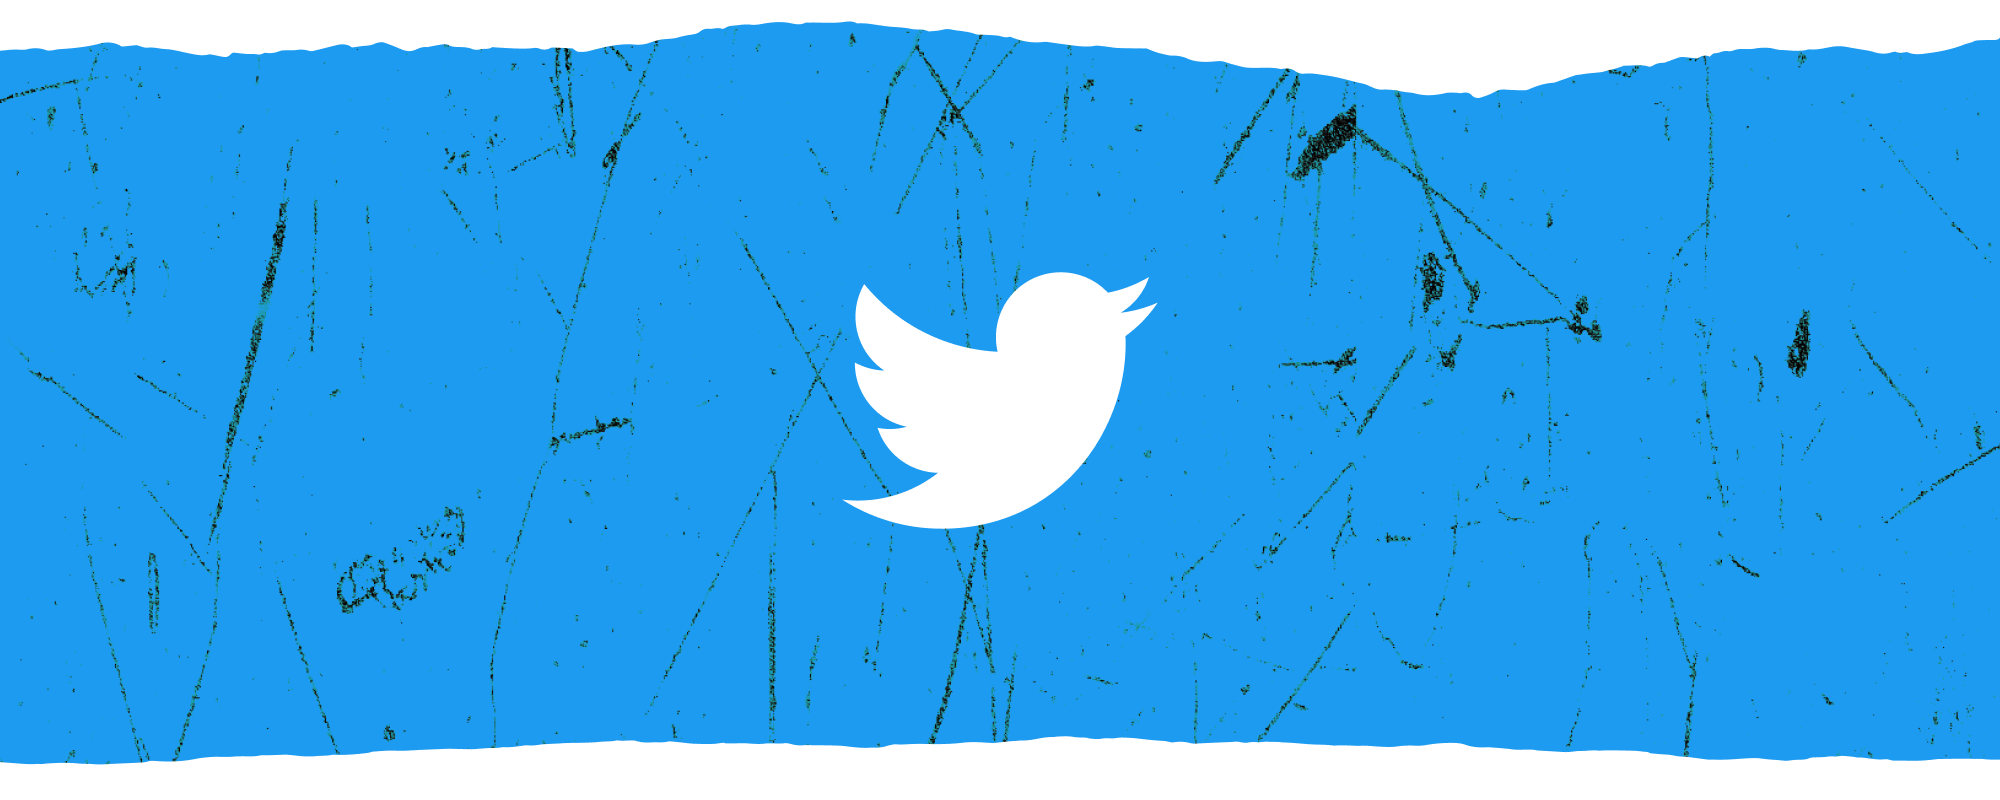 Logotipo branco do Twitter na frente de uma bandeira horizontal texturizada de azul sobreposto em branco